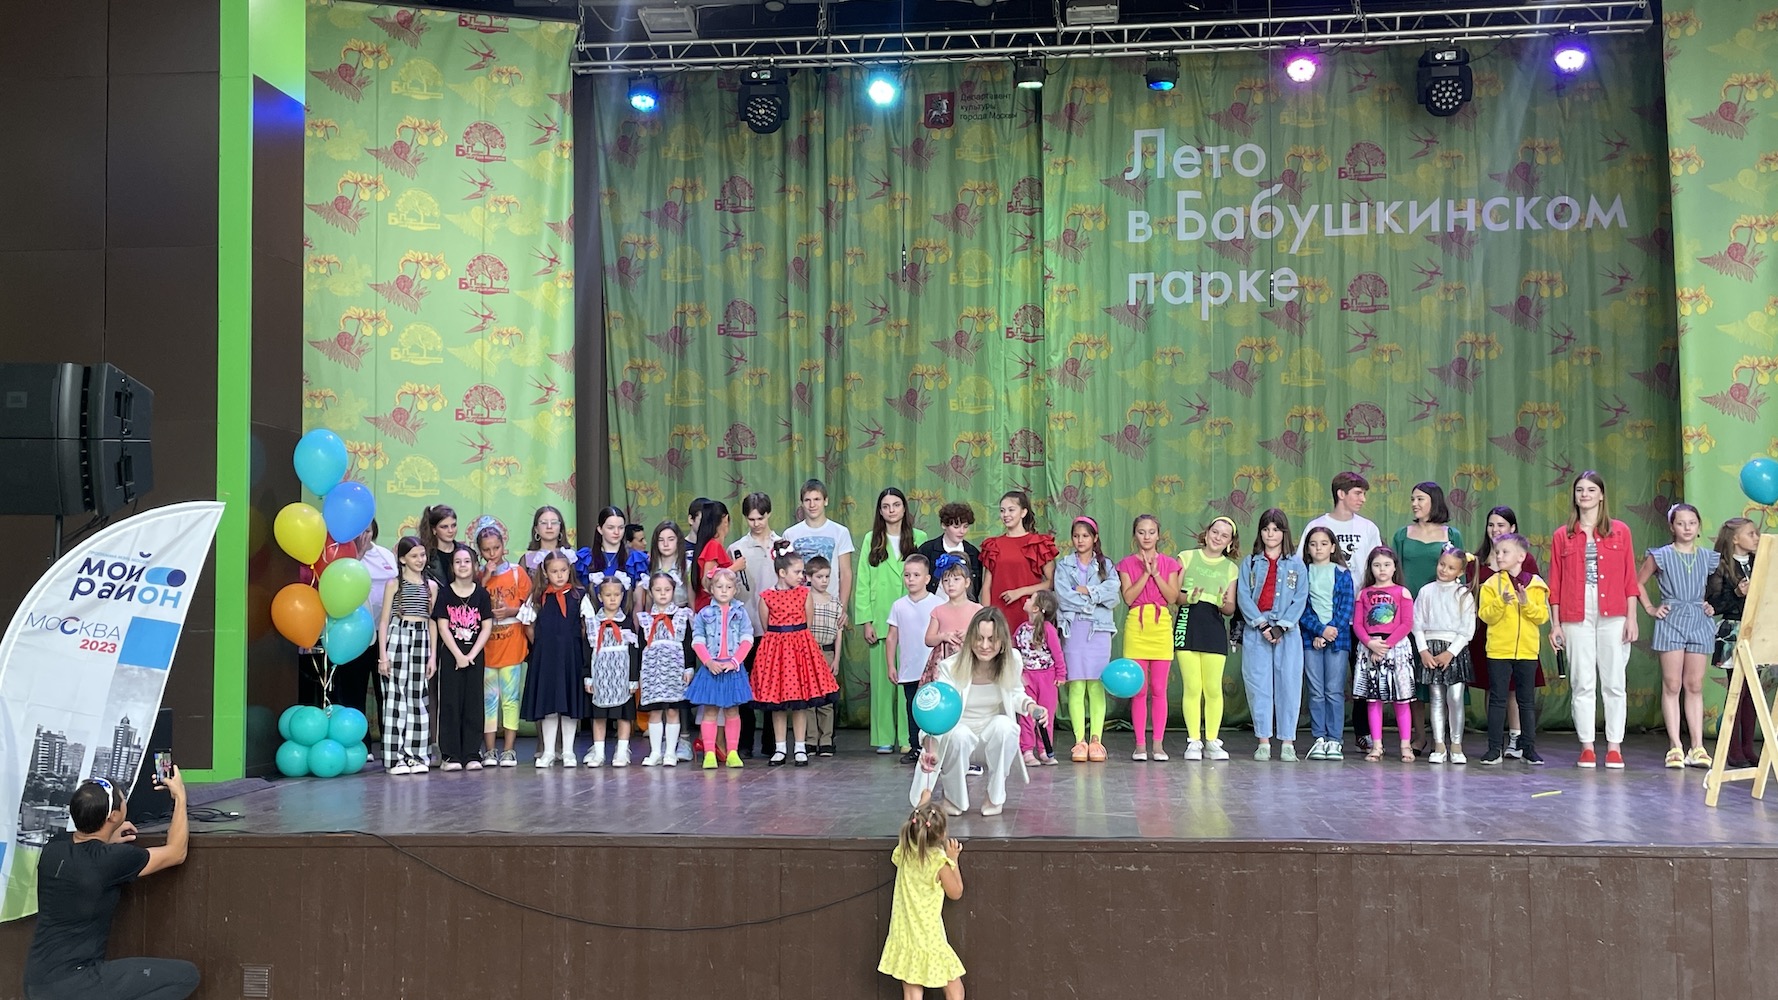 Семейный фестиваль «Ретростиль» состоялся в Лосиноостровском, фото